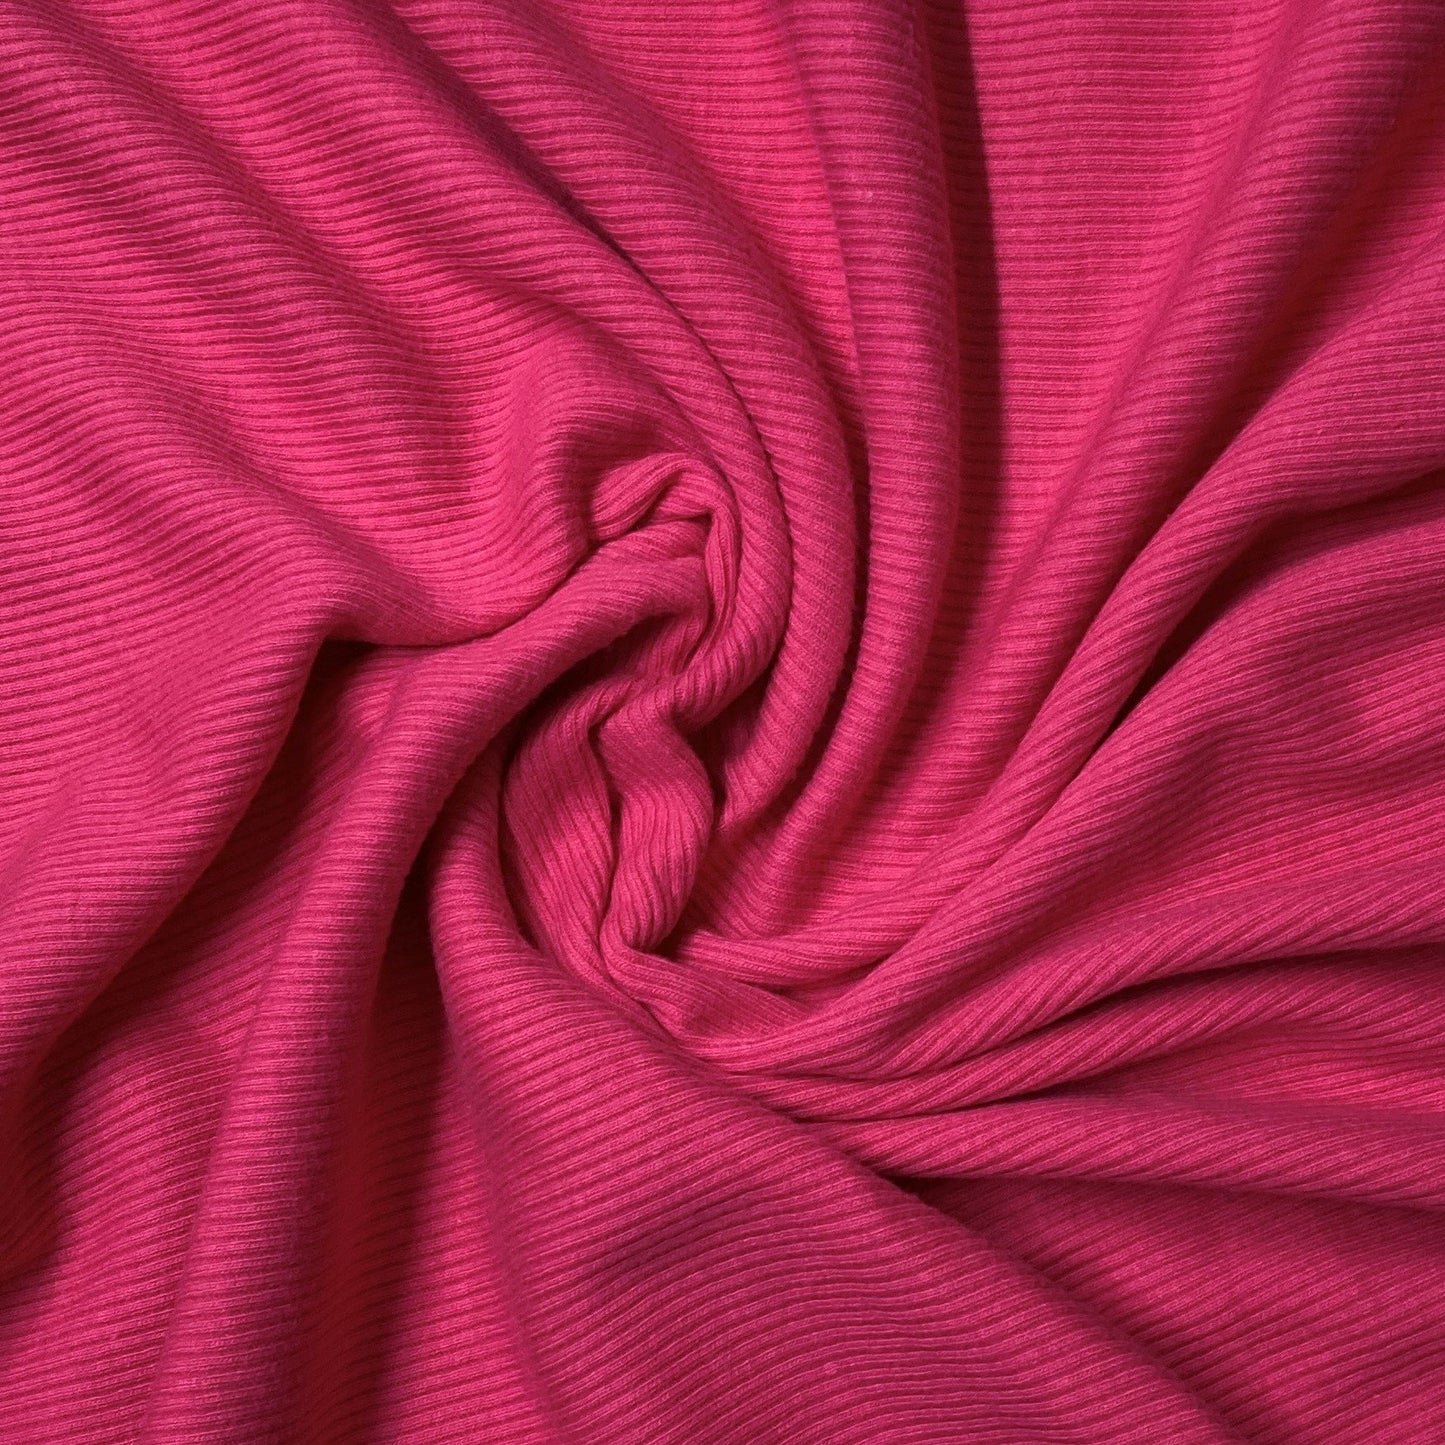 Hot Pink Cotton Rib Knit - 2x1 - Nature's Fabrics